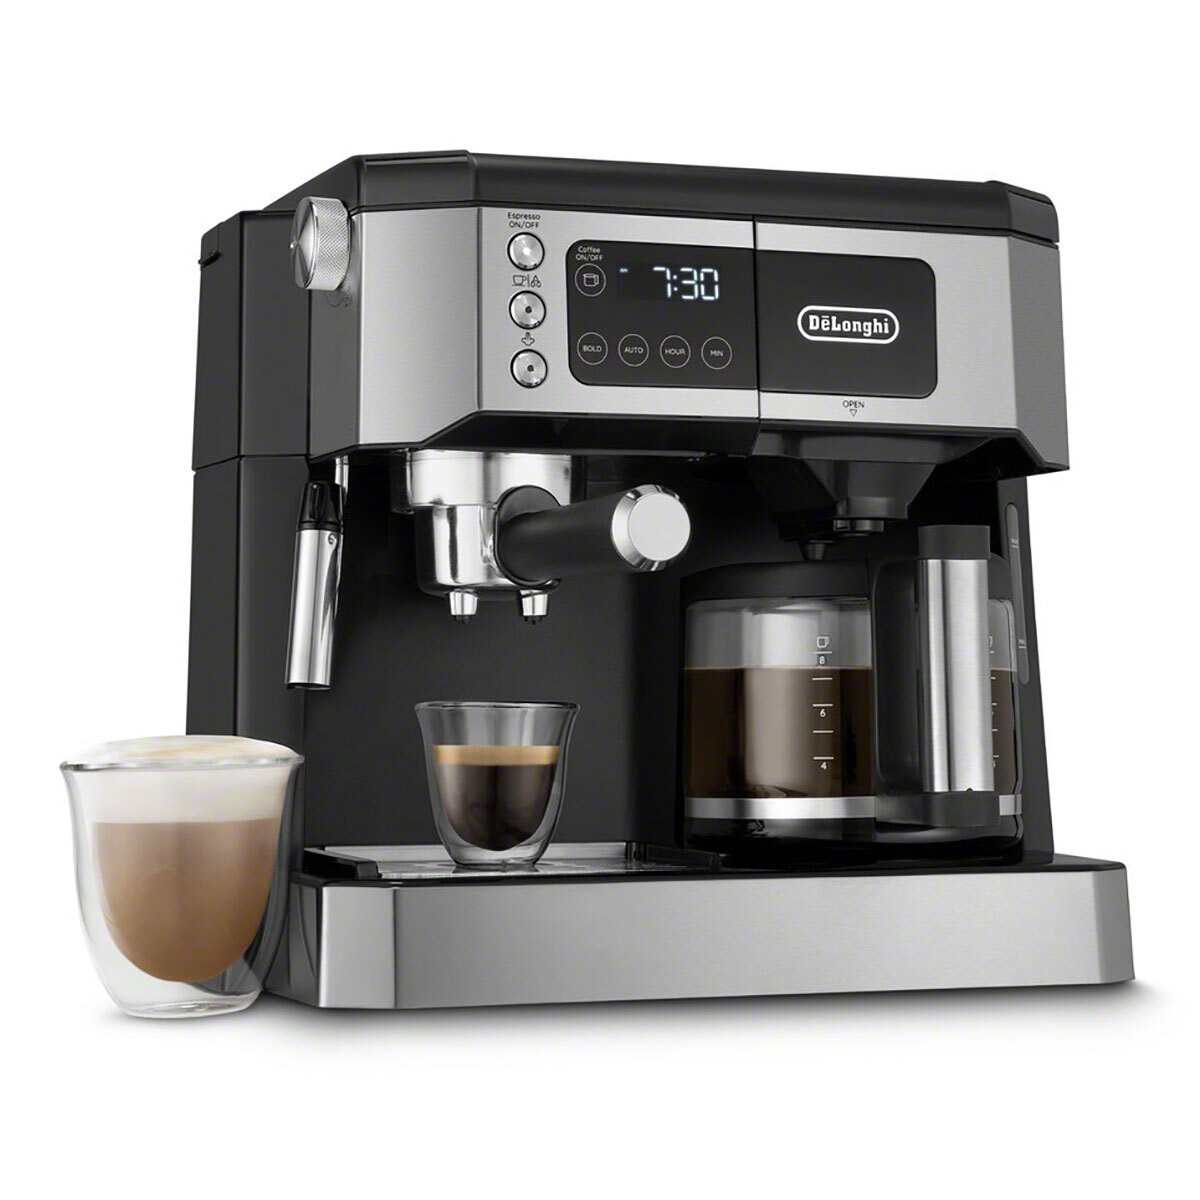 Café siempre listo y a punto: esta cafetera programable cuesta